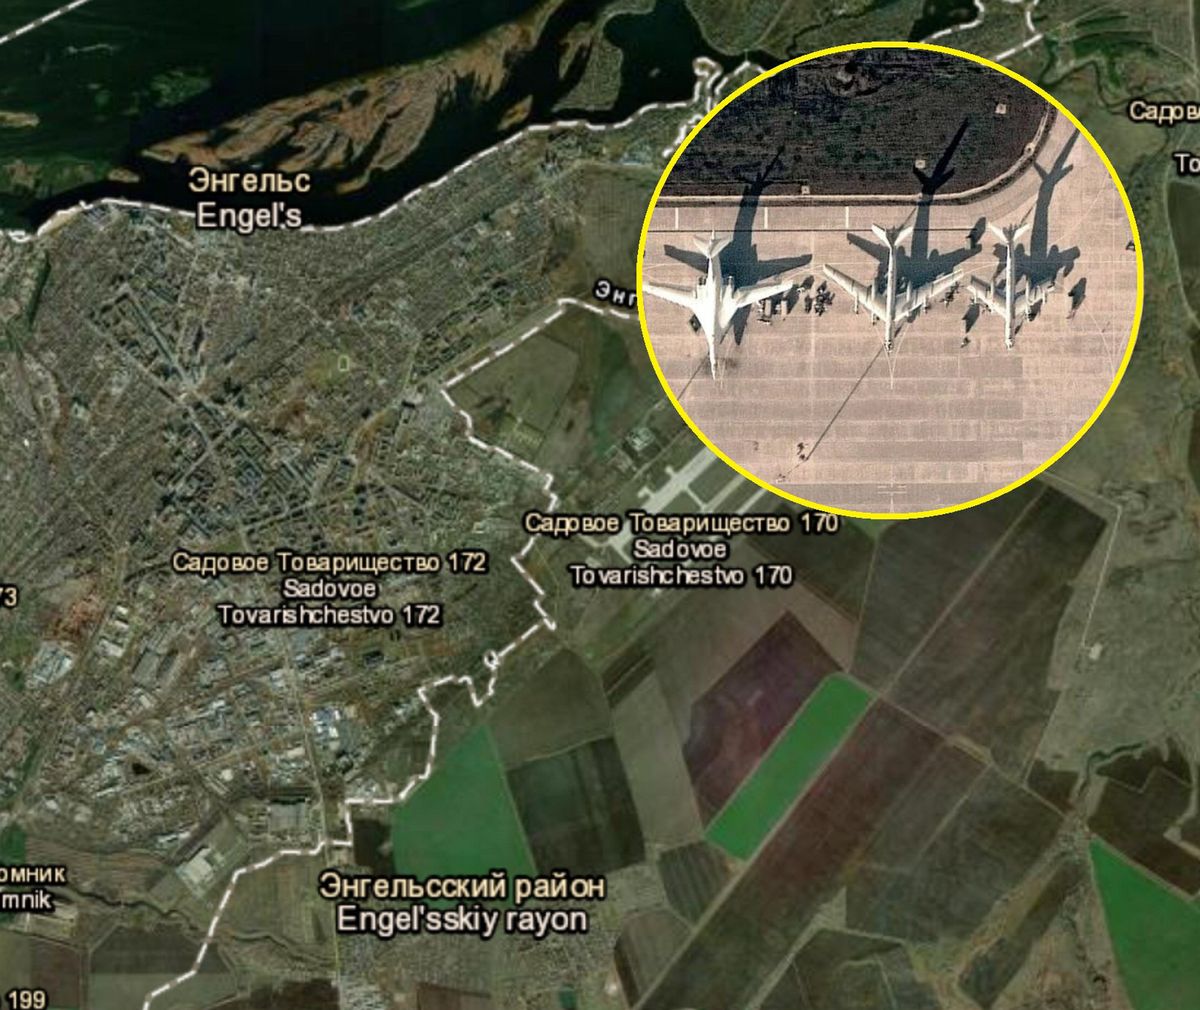 Zdjęcia satelitarne wskazują na to, że Rosjanie szykują zmasowaną ofensywę na Ukrainę 